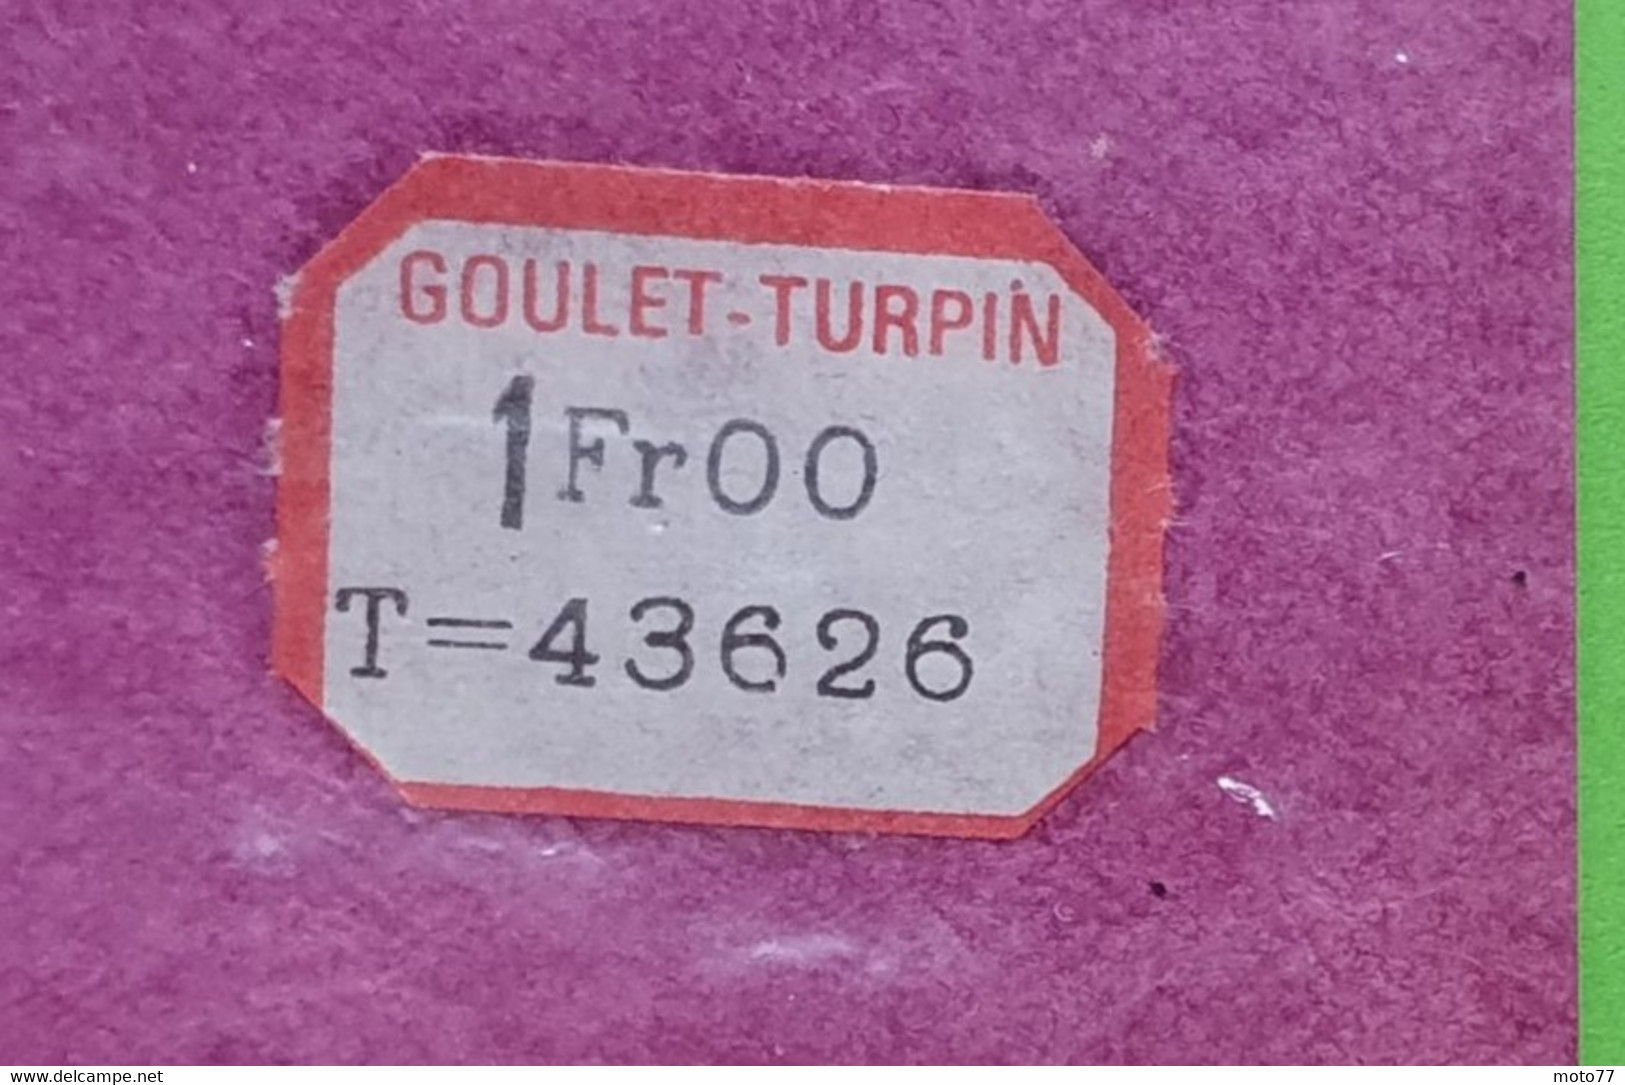 Ancien NAPPERON rond - environ diamètre 20.5 cm - Plastique - "neuf de stock" magasin GOULET TURPIN Reims - vers 1960